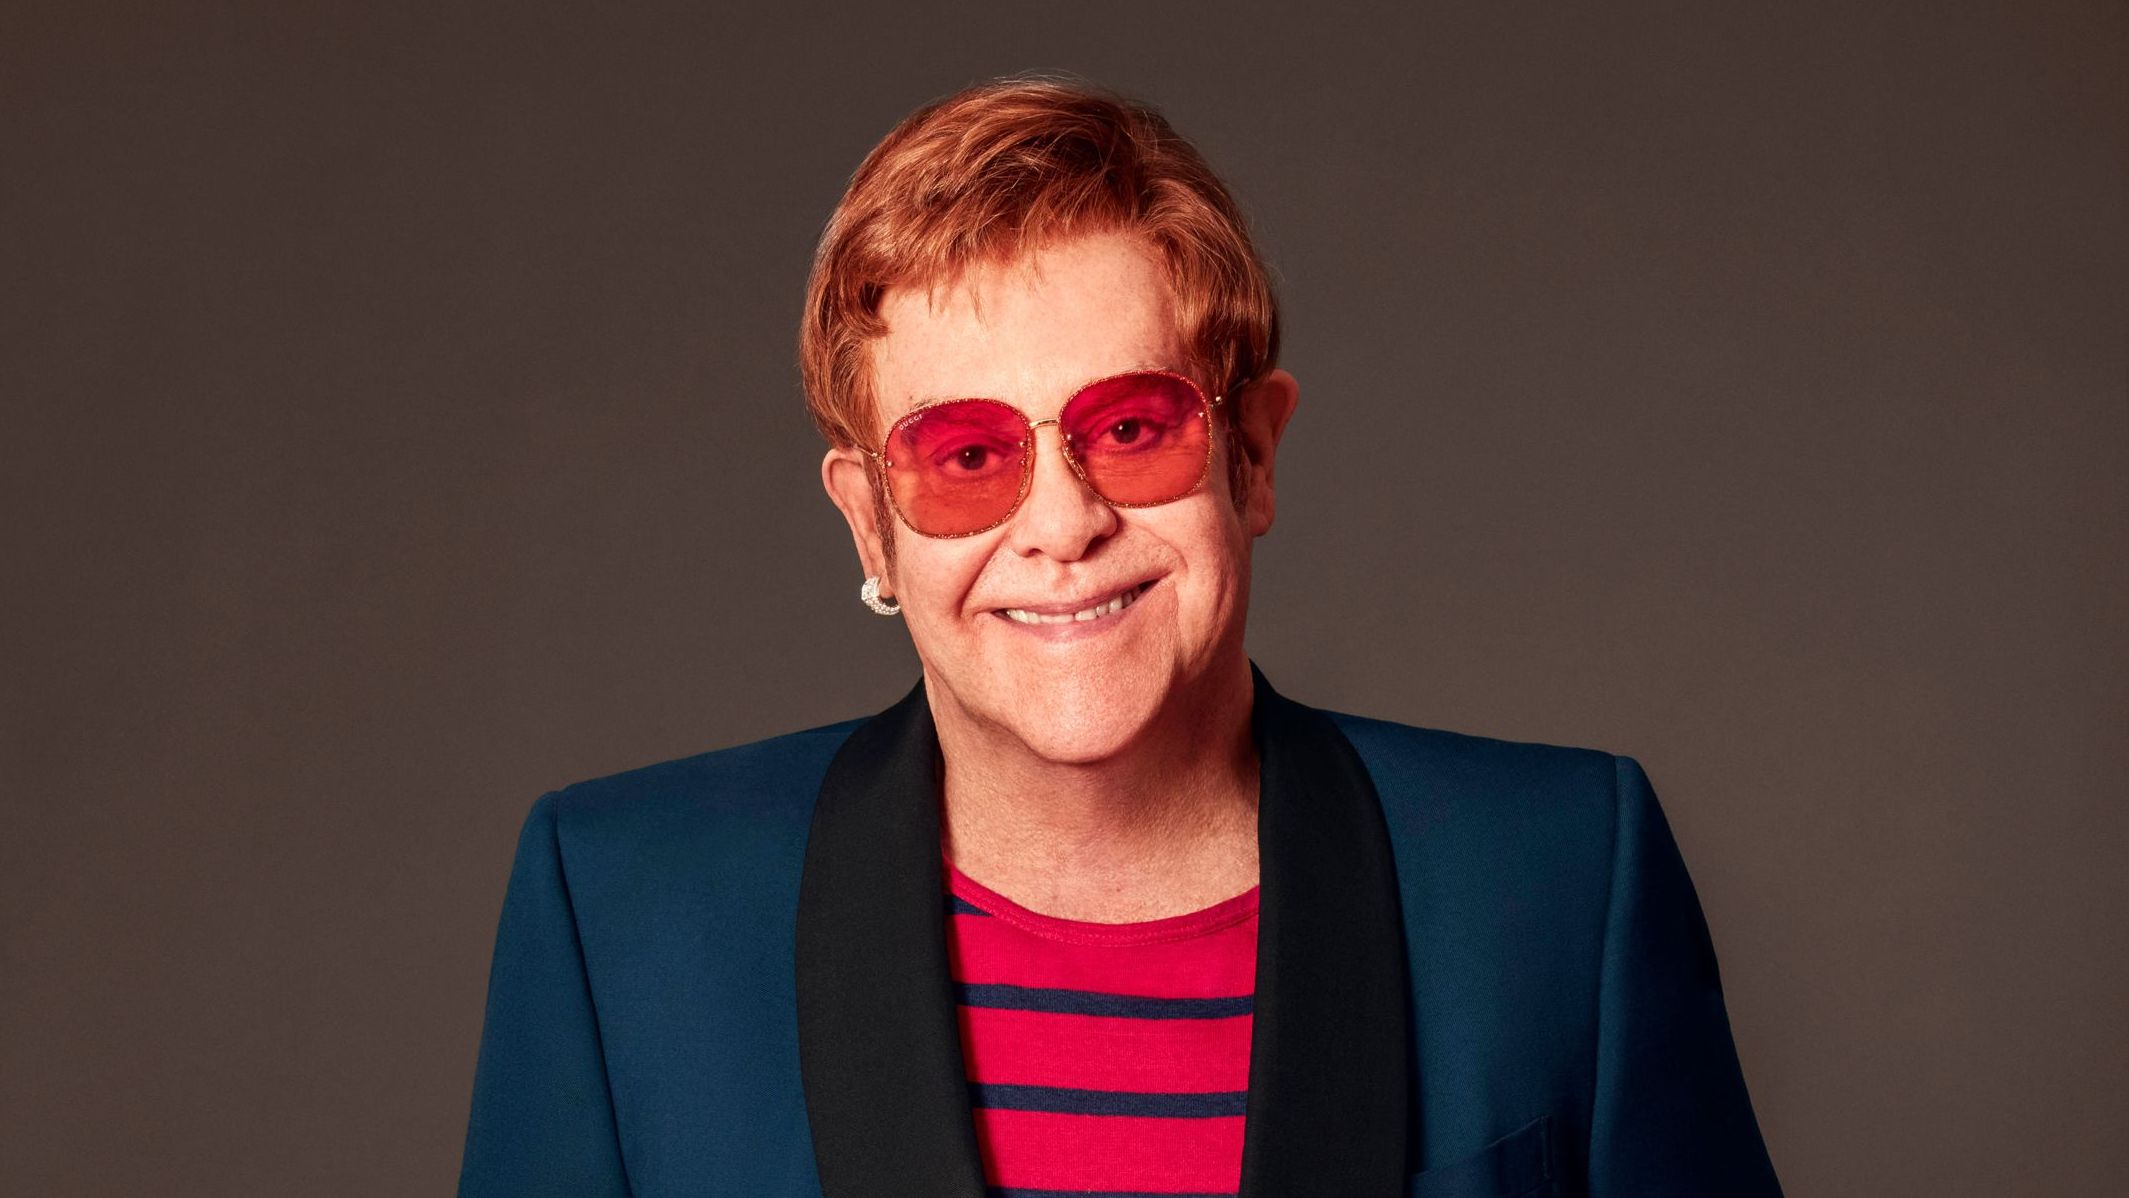 Elton John - Lyrics & Popular Songs 1.0 Free Download